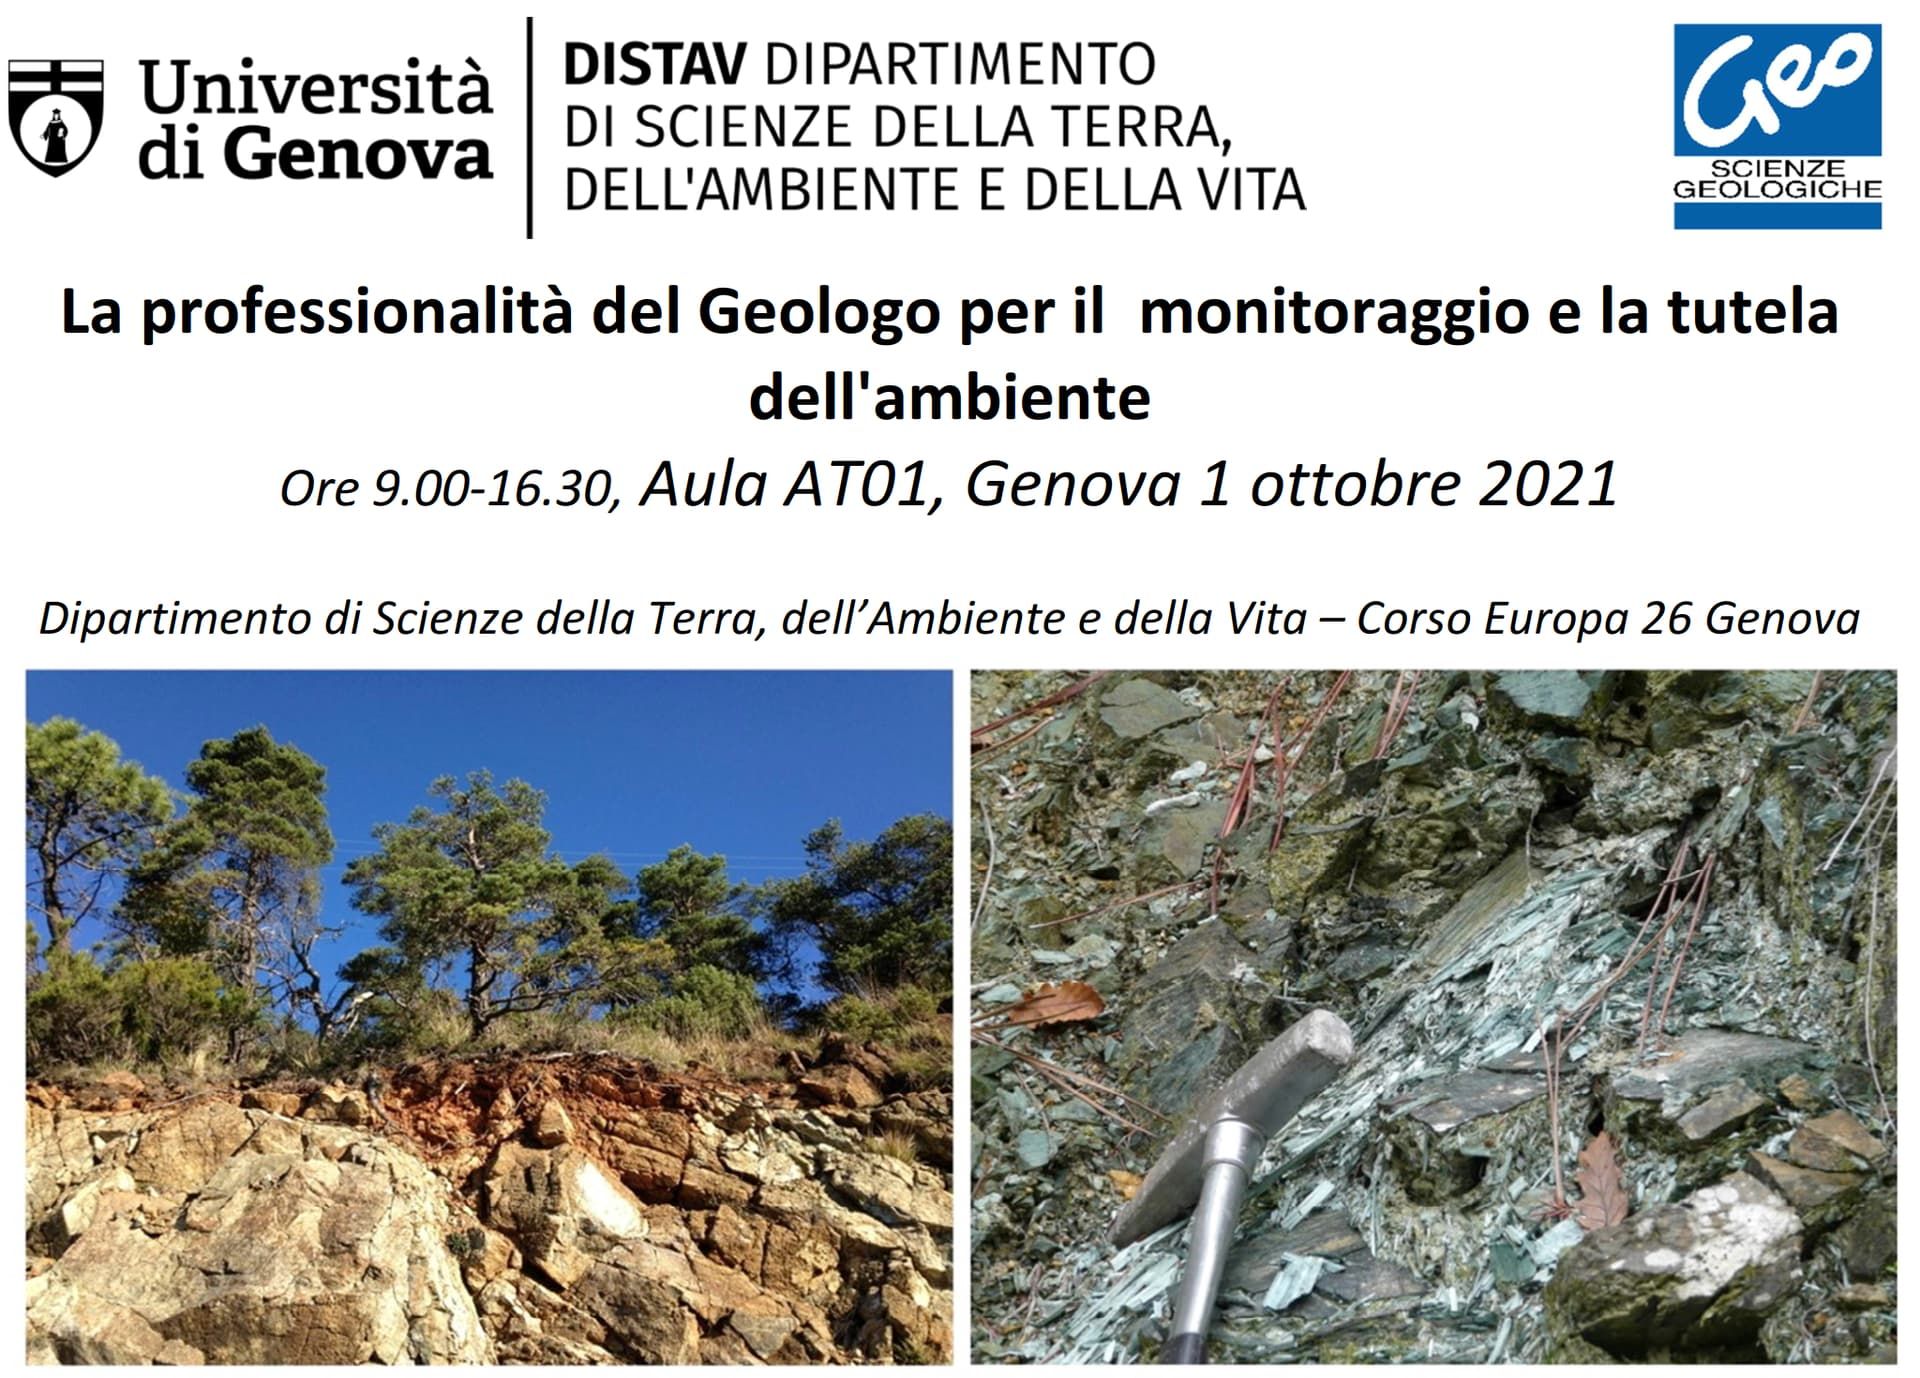 Webinar DISTAV - 'La professionalità del Geologo per il monitoraggio e la tutela dell'ambiente'